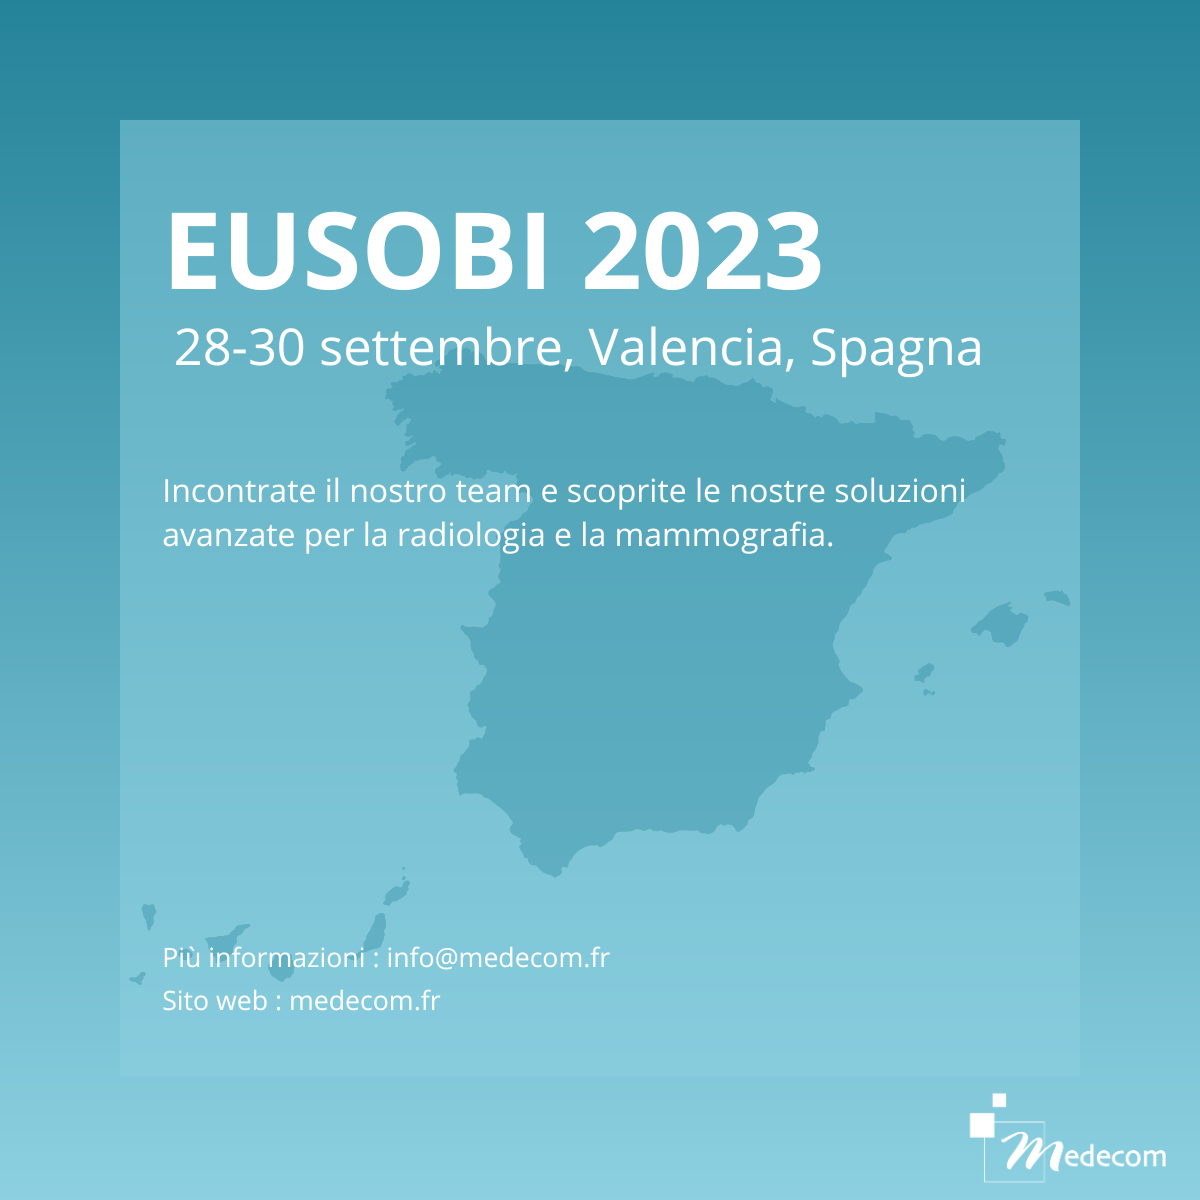 EUSOBI 2023